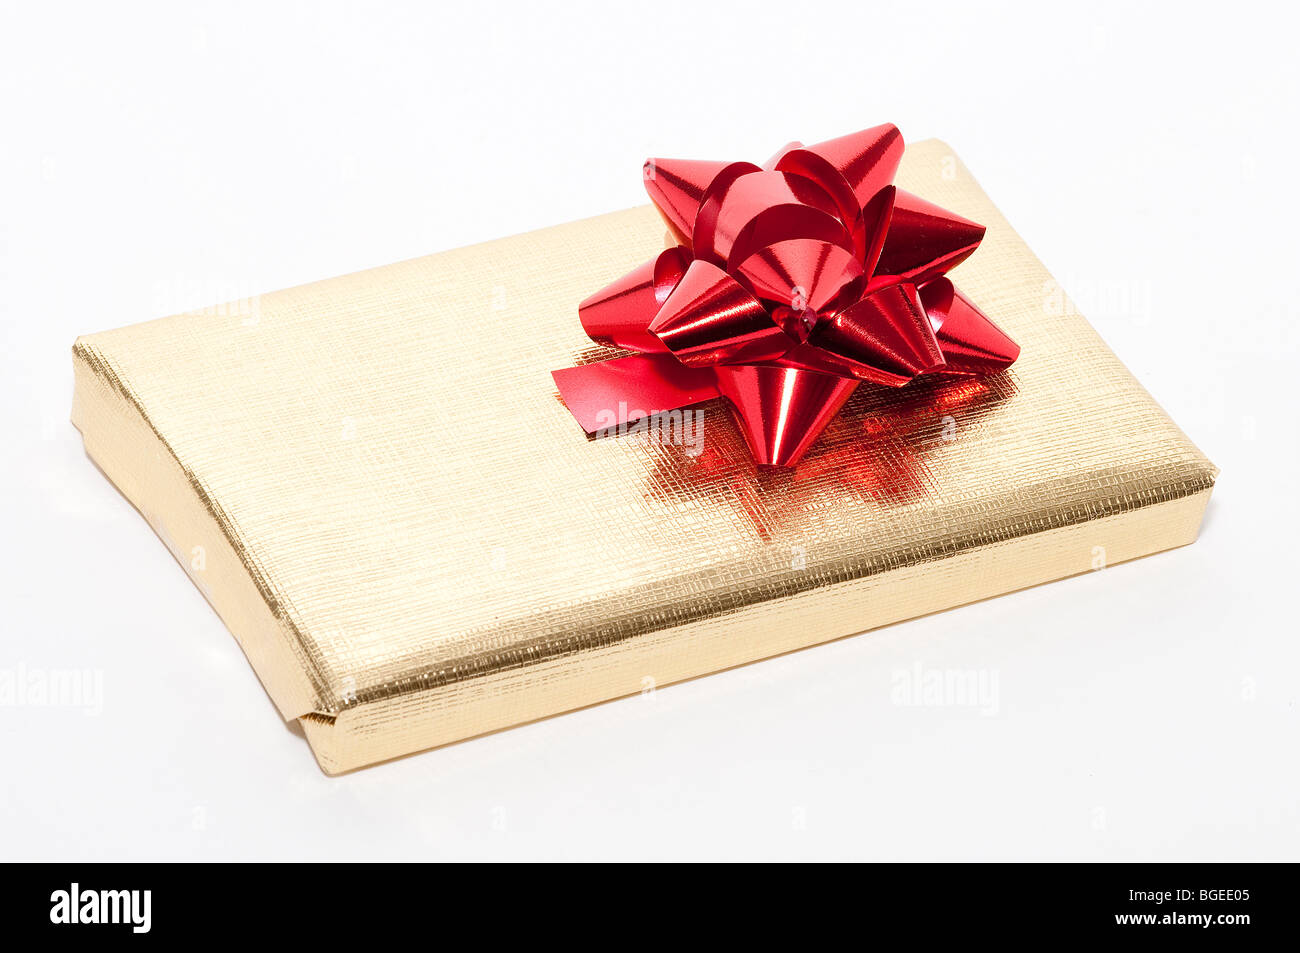 Weihnachts-Geschenk-Pakete Stockfoto